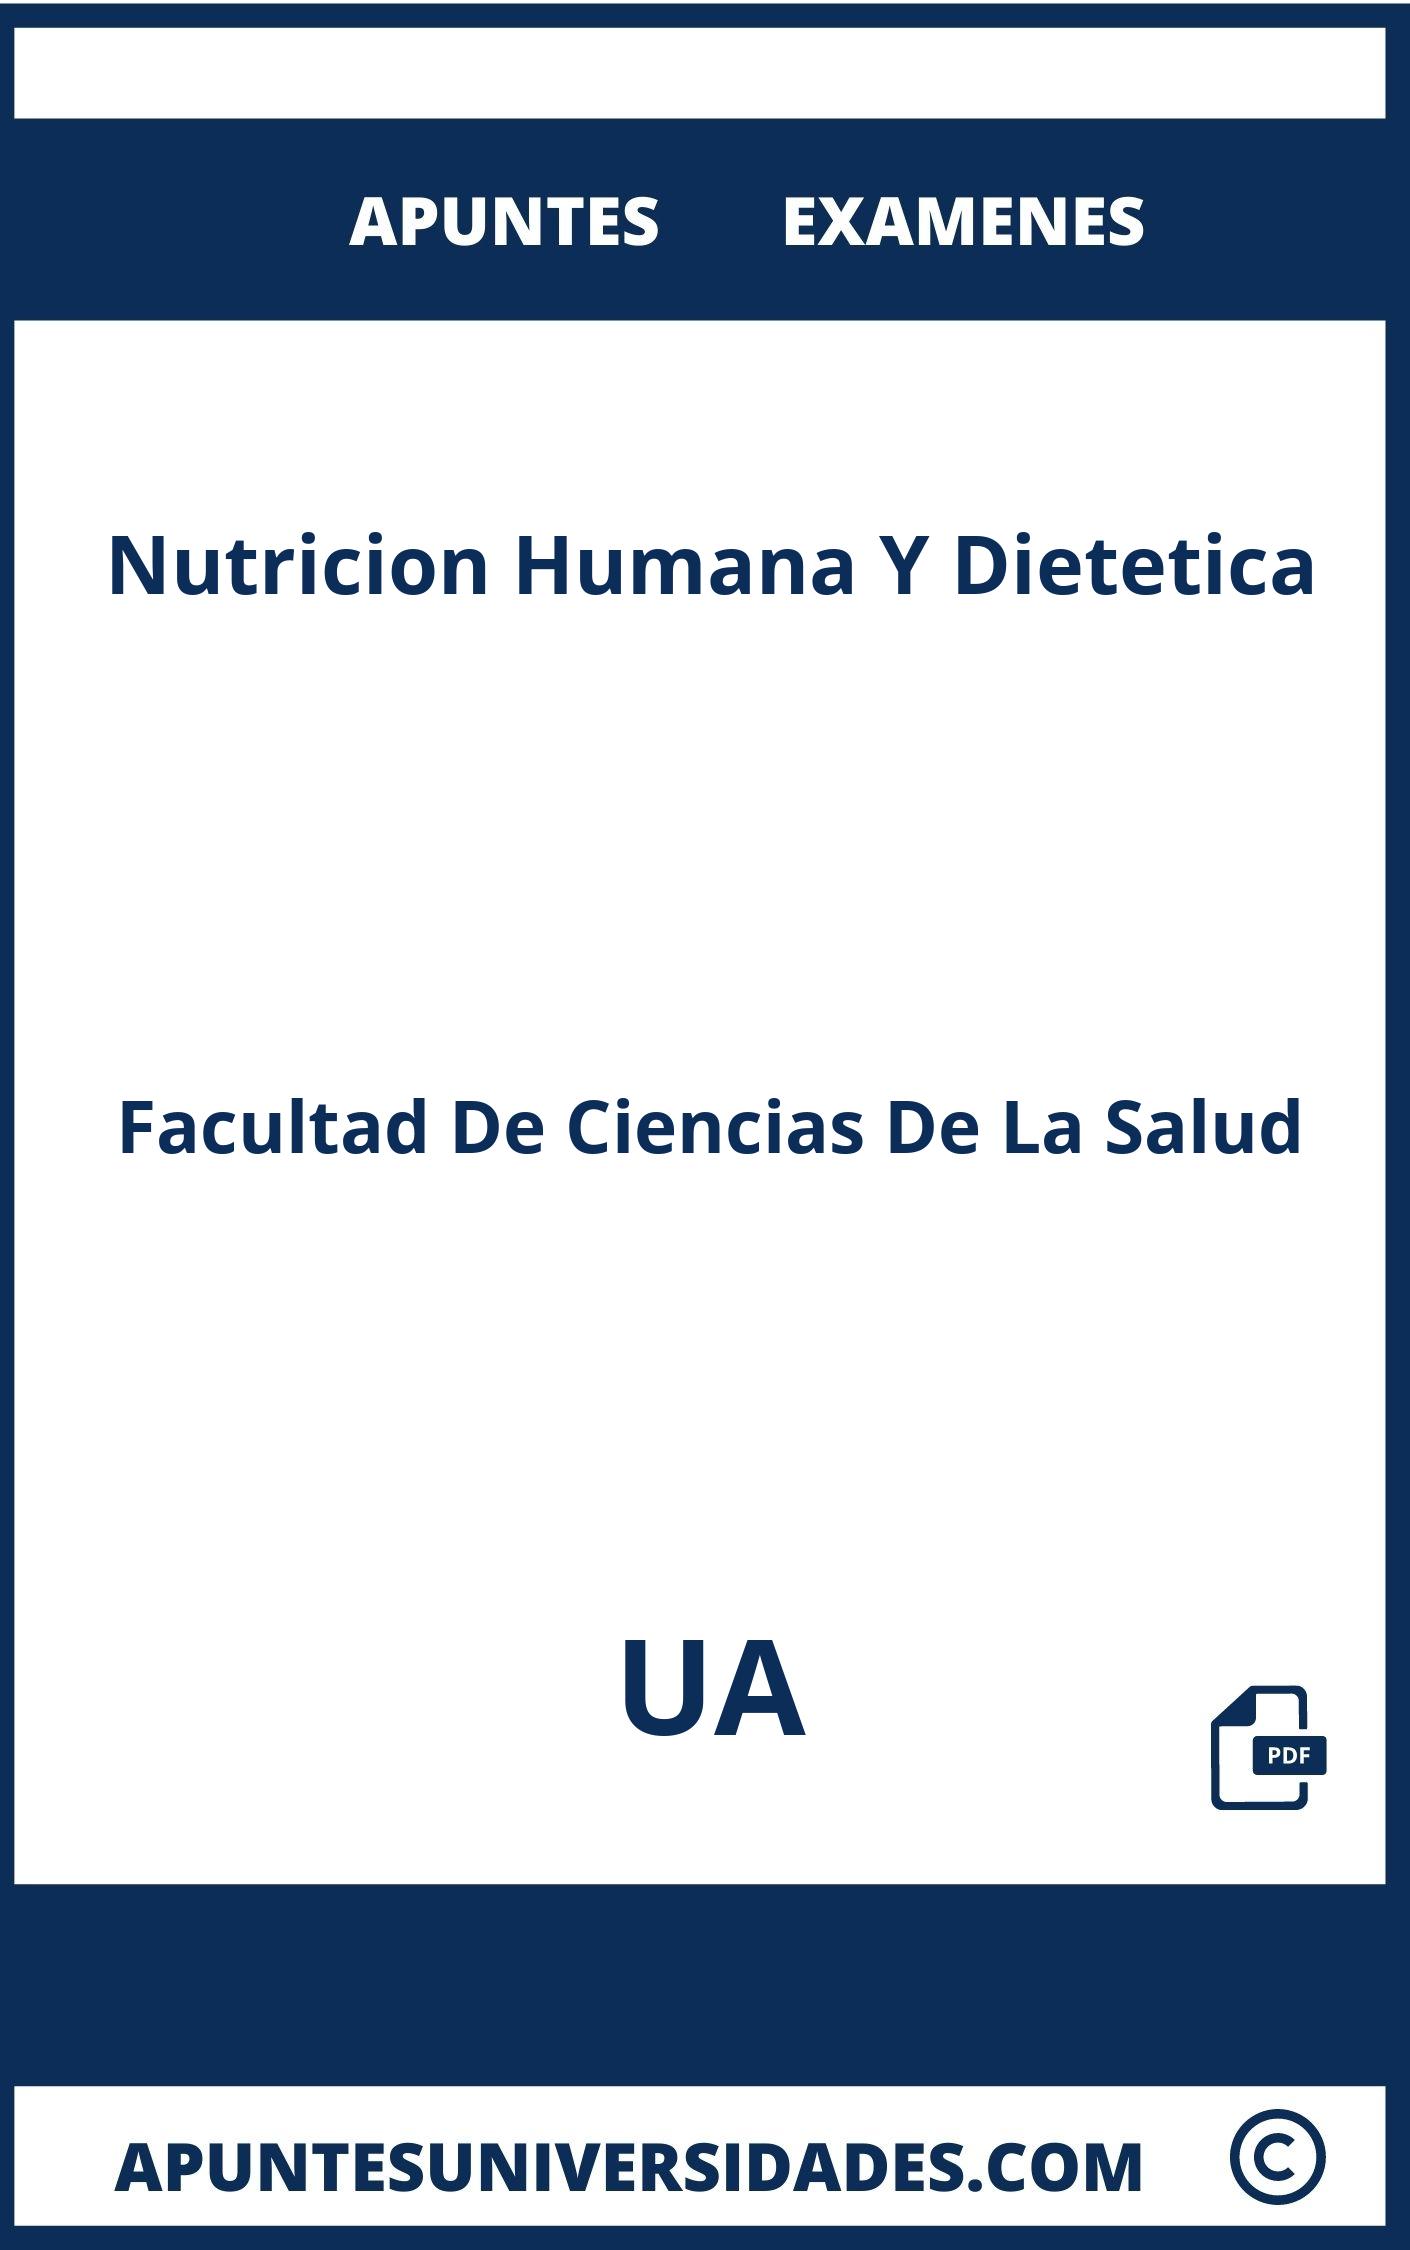 Apuntes y Examenes Nutricion Humana Y Dietetica UA